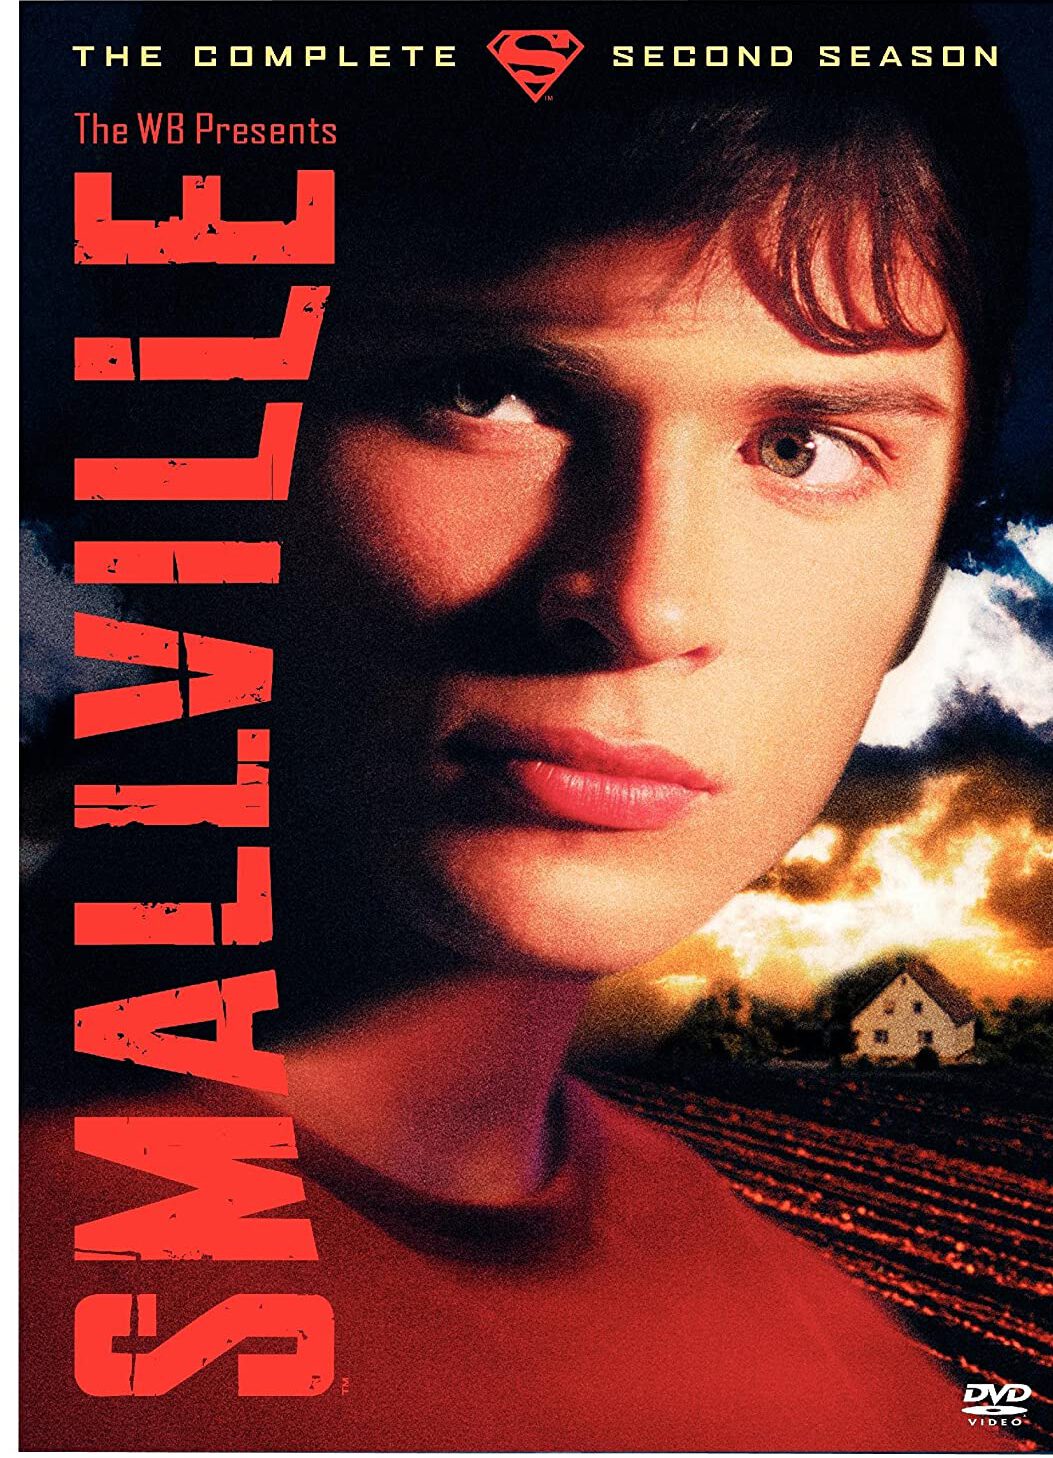 ดูหนังออนไลน์ฟรี Smallville สมอลวิลล์ หนุ่มน้อยซุปเปอร์แมน ปี 2 ตอนที่ 22